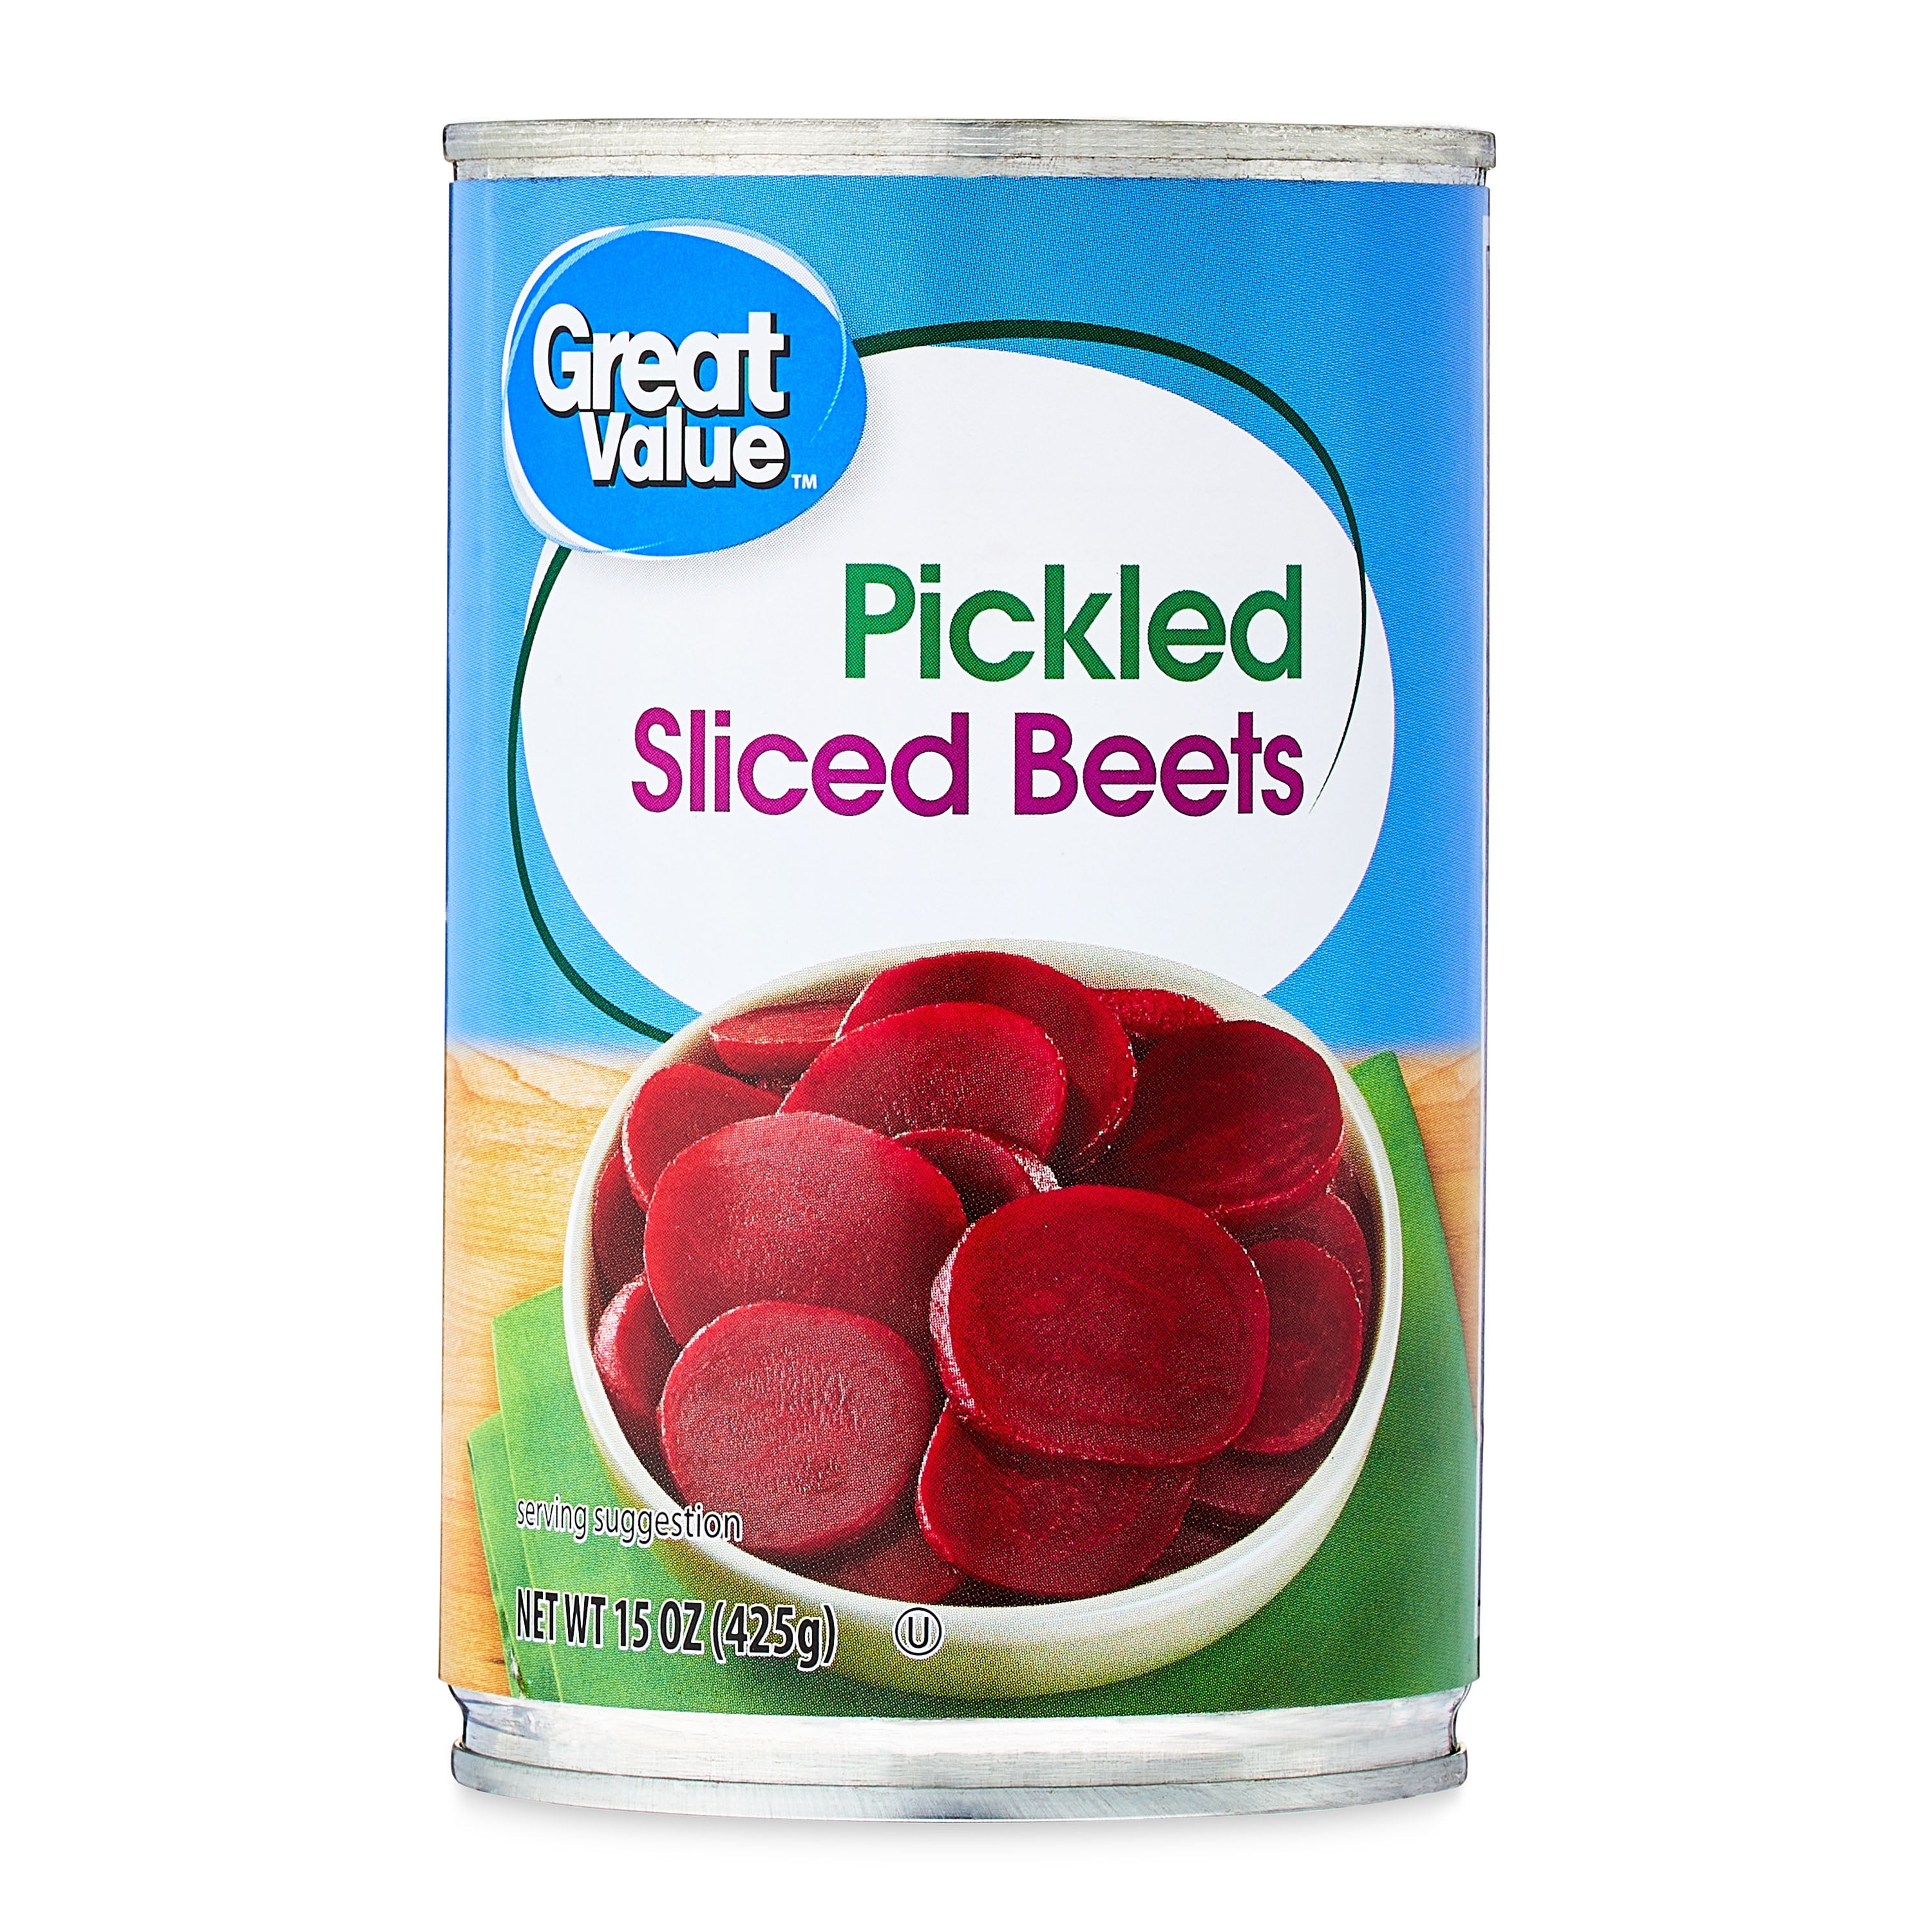 Great Value Pickled Sliced Beets, 15 oz